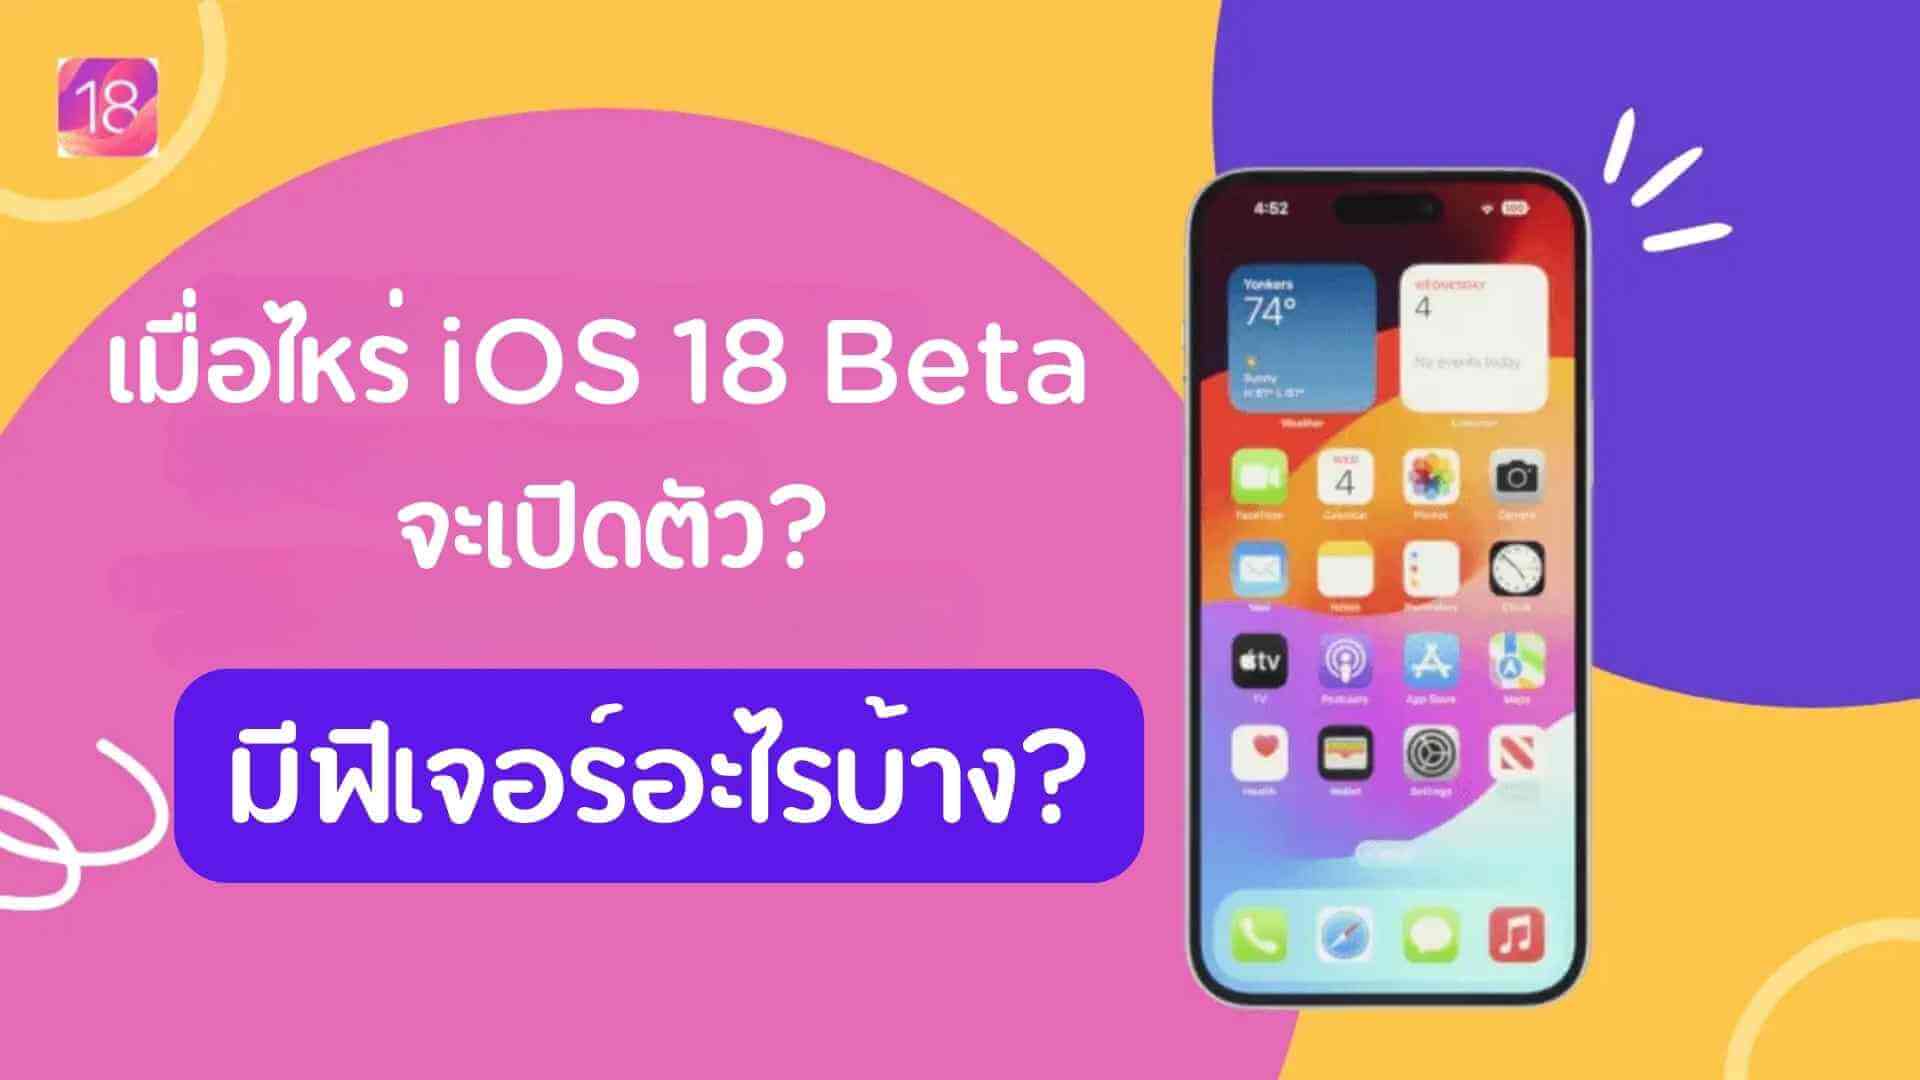 เมื่อไหร่ iOS 18 Beta จะเปิดตัว? มีฟีเจอร์อะไรบ้าง? iPhone รุ่นไหนได้ไปต่อ?